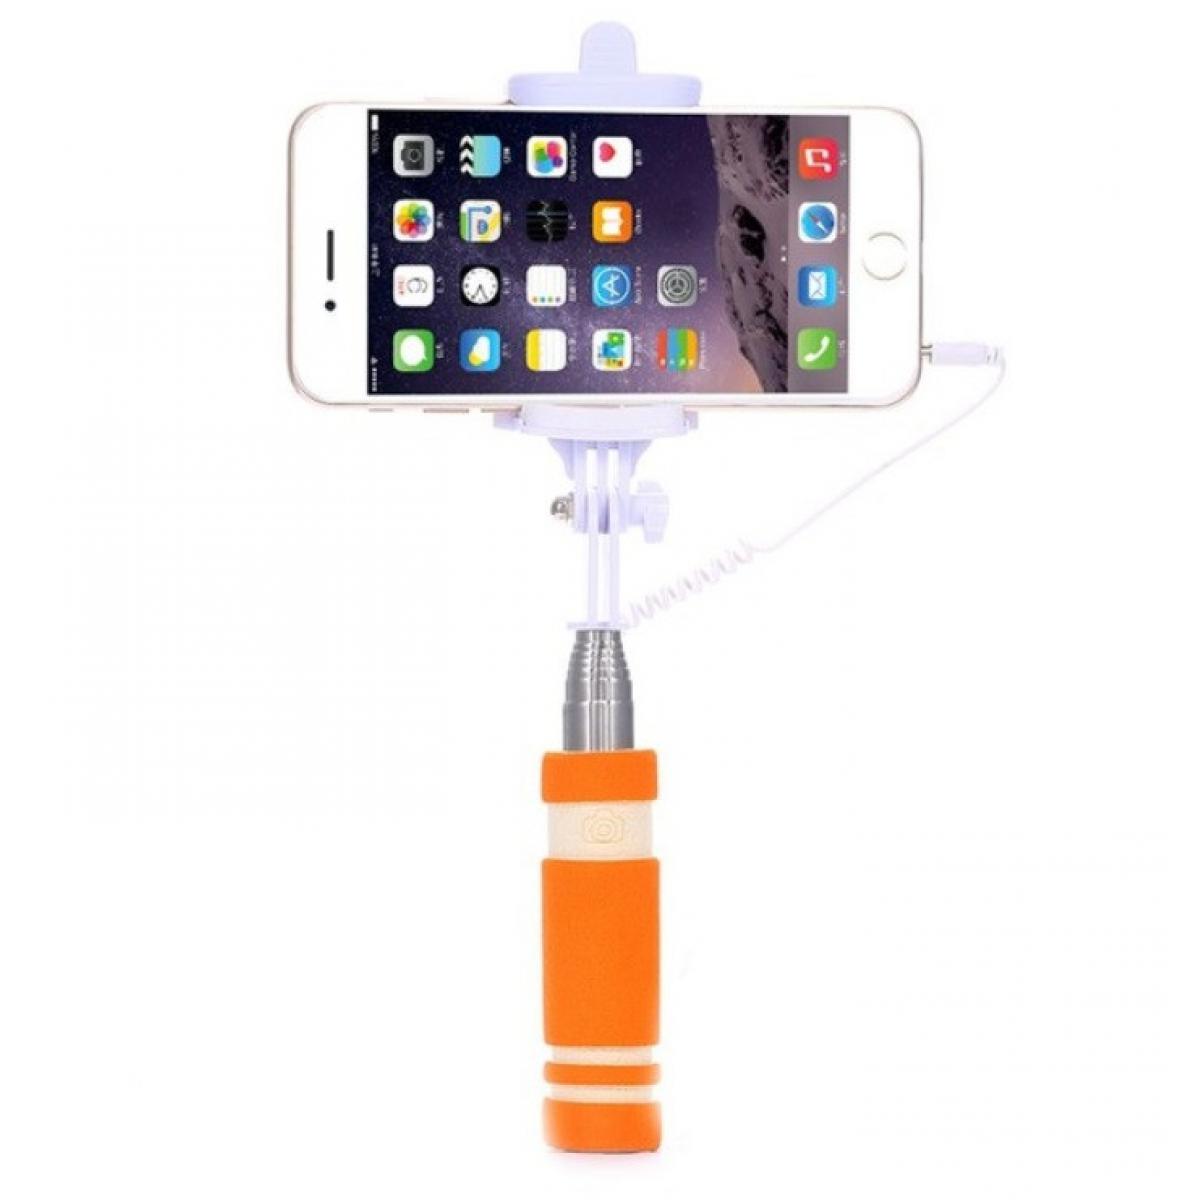 Shot - Mini Perche Selfie pour "HUAWEI P40 lite 5G" Smartphone avec Cable Jack Selfie Stick Android IOS Reglable Bouton Photo (ORANGE) - Autres accessoires smartphone